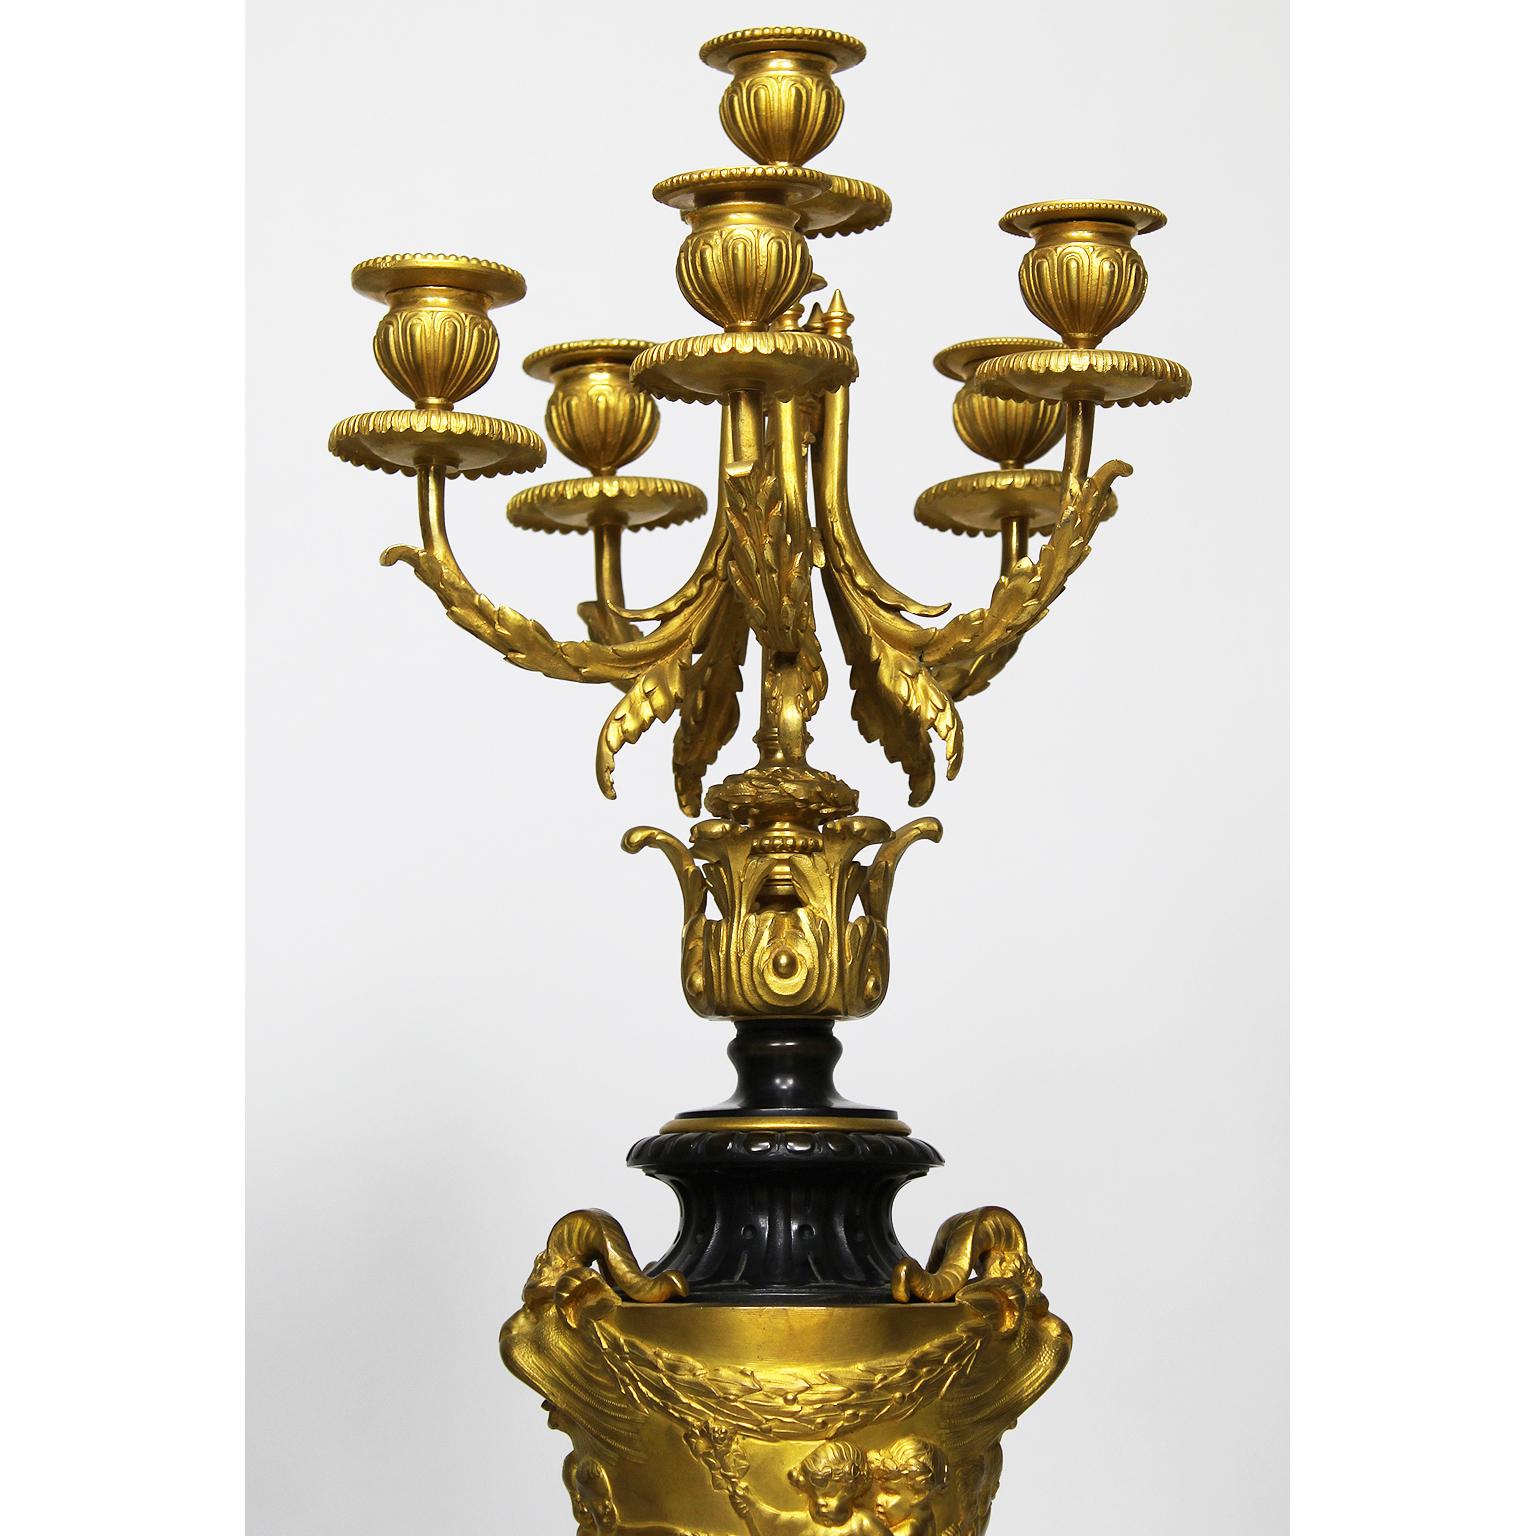 Paire de candélabres à six lumières en bronze doré et marbre rouge Michele de style néo-rococo français du XIXe siècle, attribués à Ferdinand Barbedienne (français, 1810-1892) d'après un modèle de Claude Michel (français, 1738-1814), connu sous le